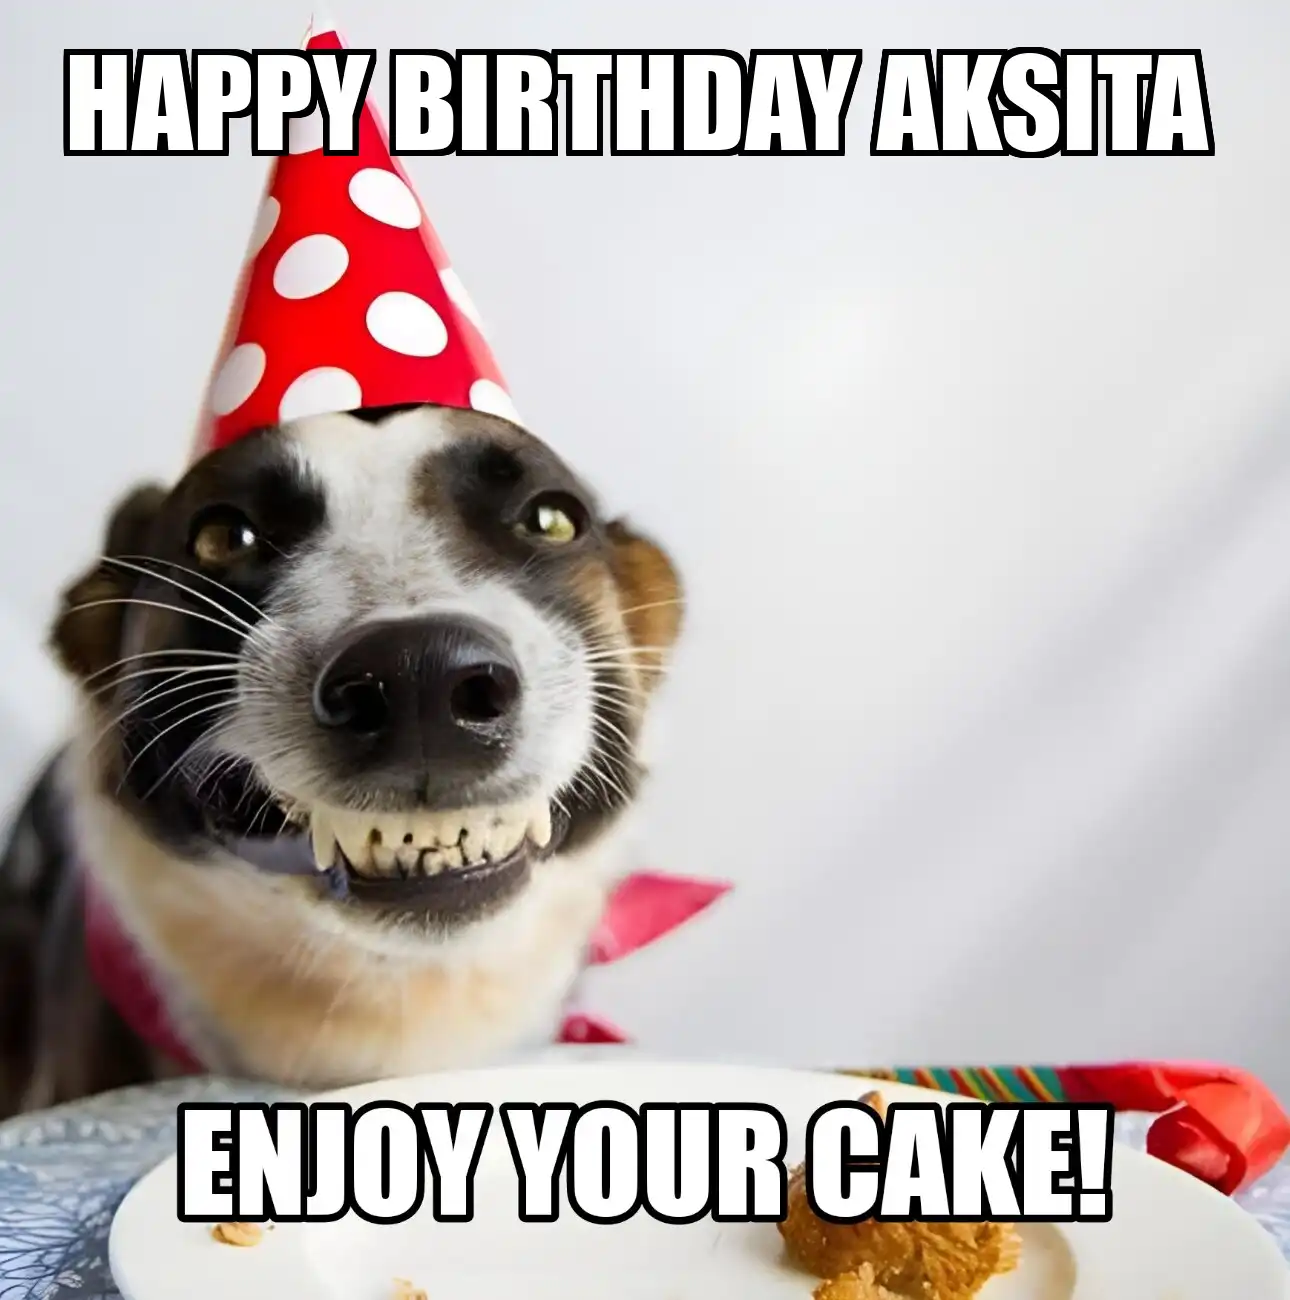 Happy Birthday Aksita Enjoy Your Cake Dog Meme